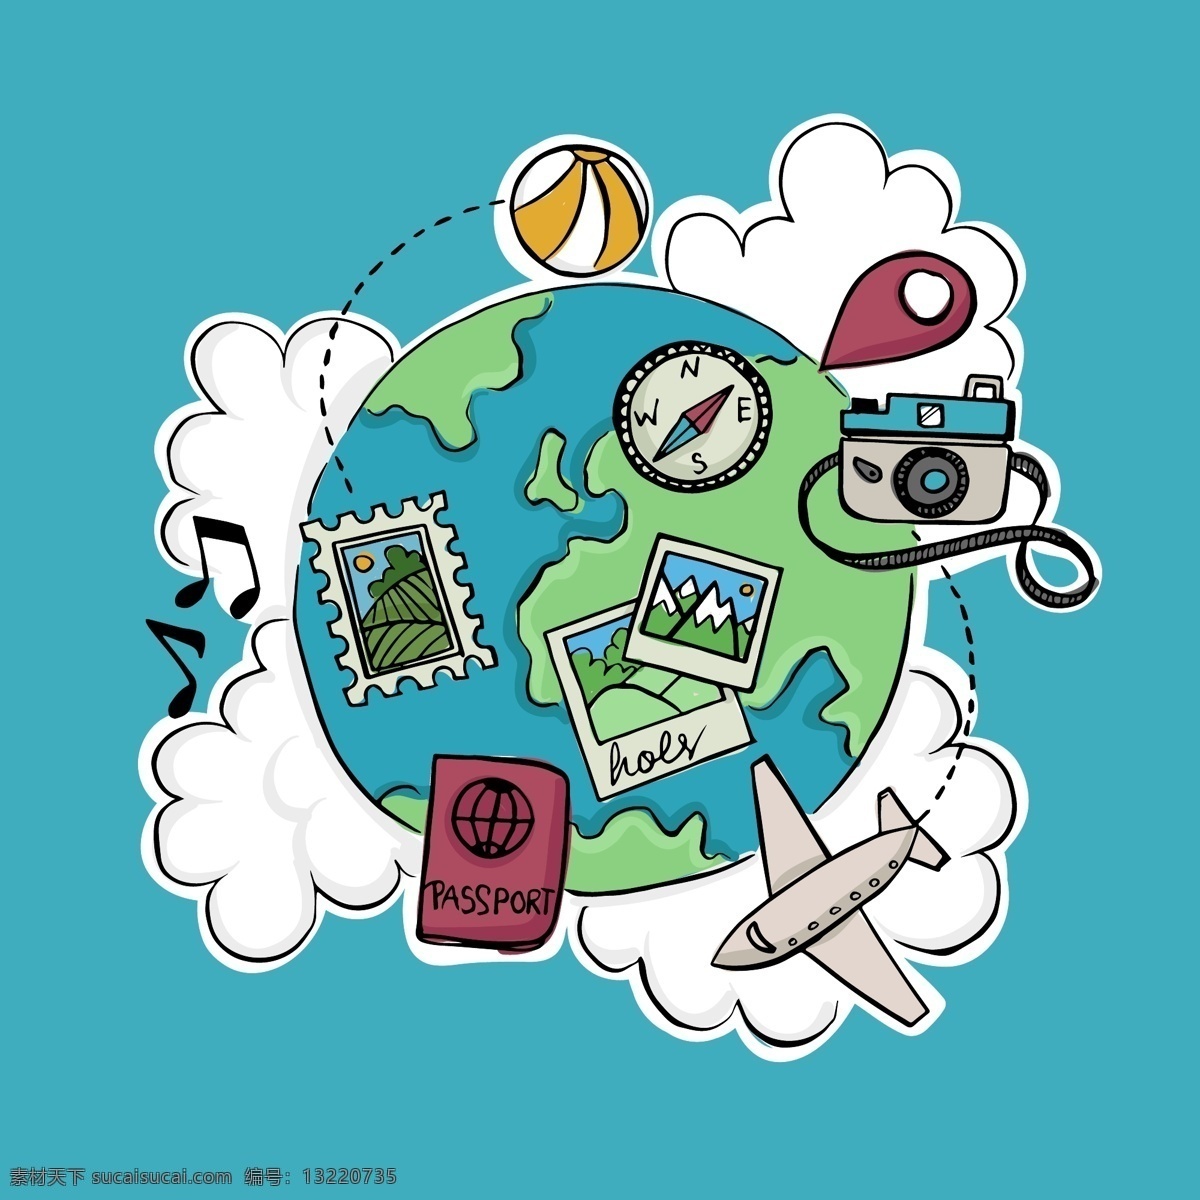 彩绘 地球 环球 旅行 元素 矢量 地标 照相机 音符 邮票 护照 相片 指南针 飞机 轨迹 云朵 环球旅行 文化艺术 绘画书法